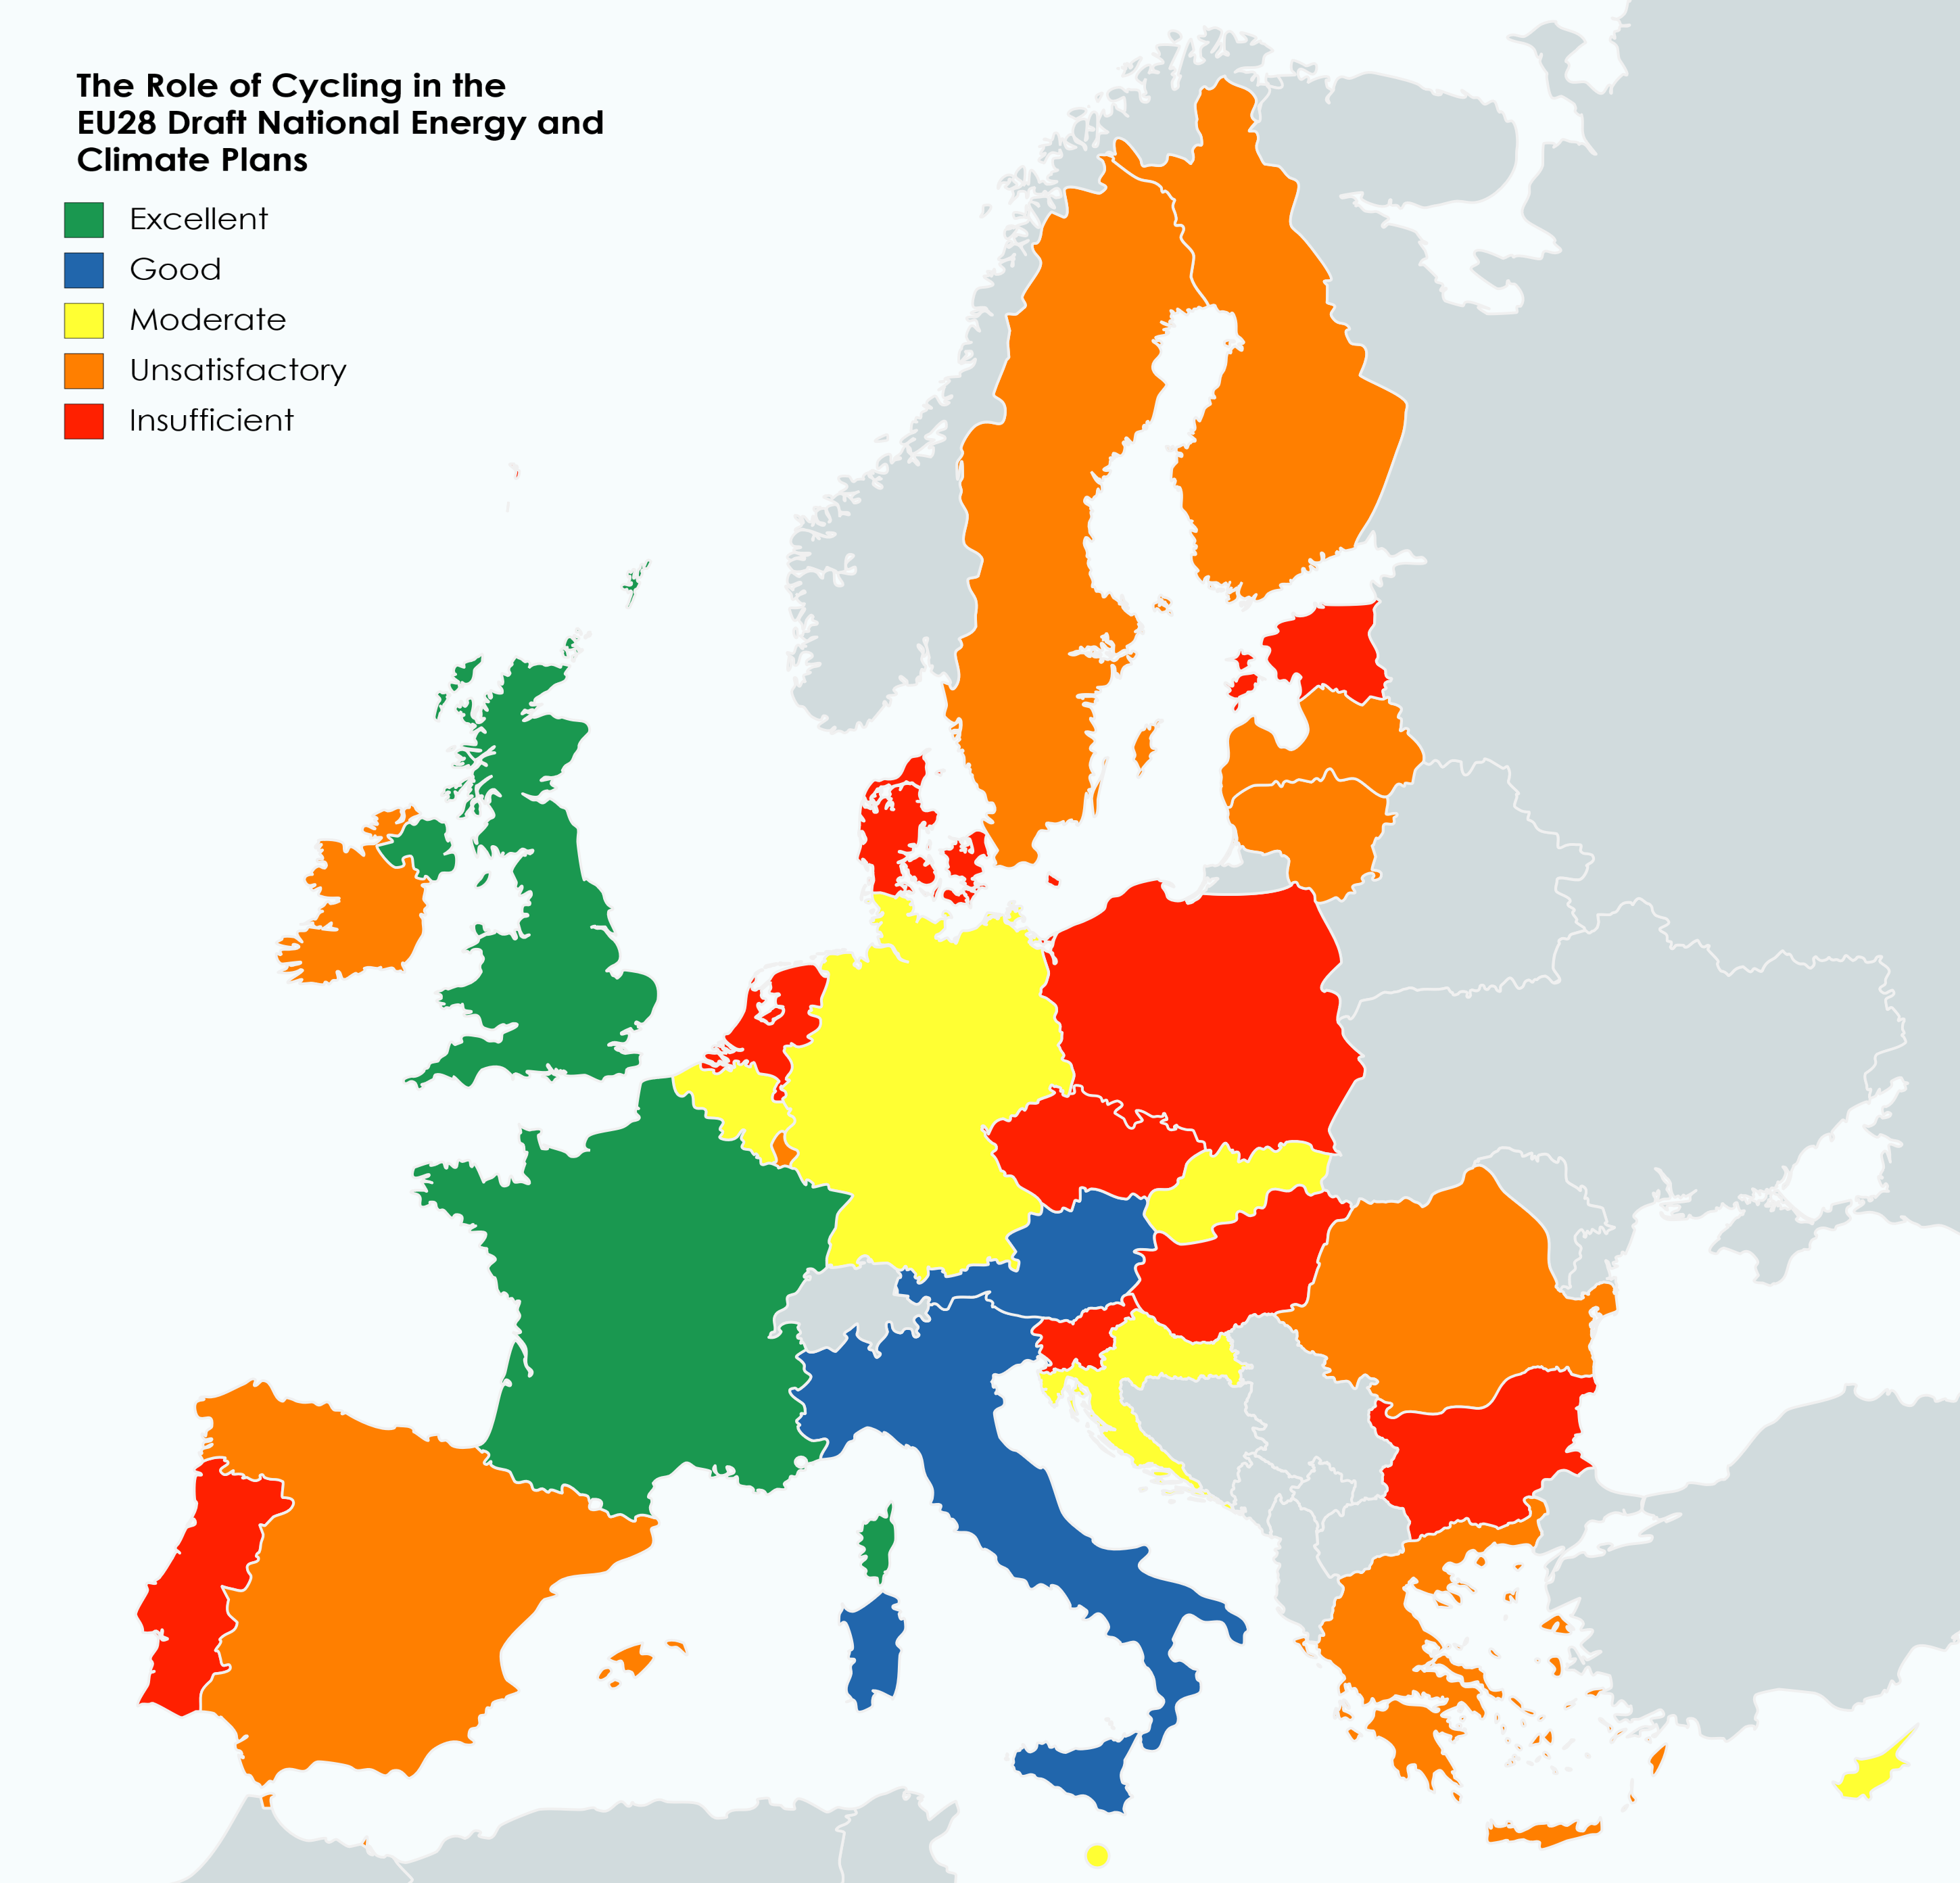 Az EU tagállamok energia- és klímatervei figyelmen kívül hagyják a kerékpározást